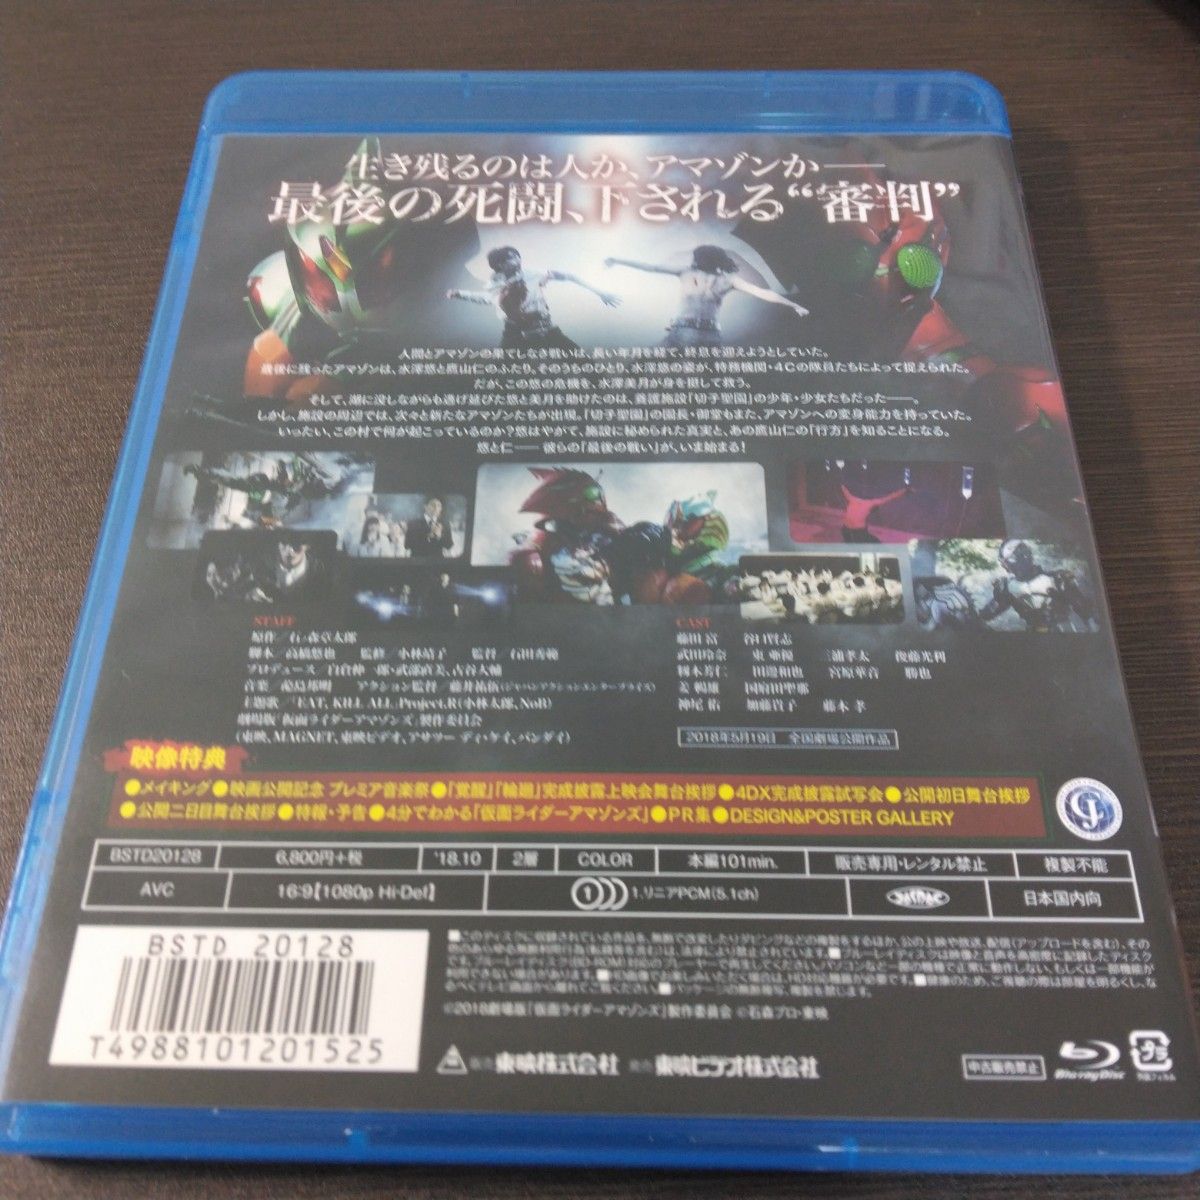 【国内盤ブルーレイ】 仮面ライダーアマゾンズ 1期2期劇場版 Blu-rayセット